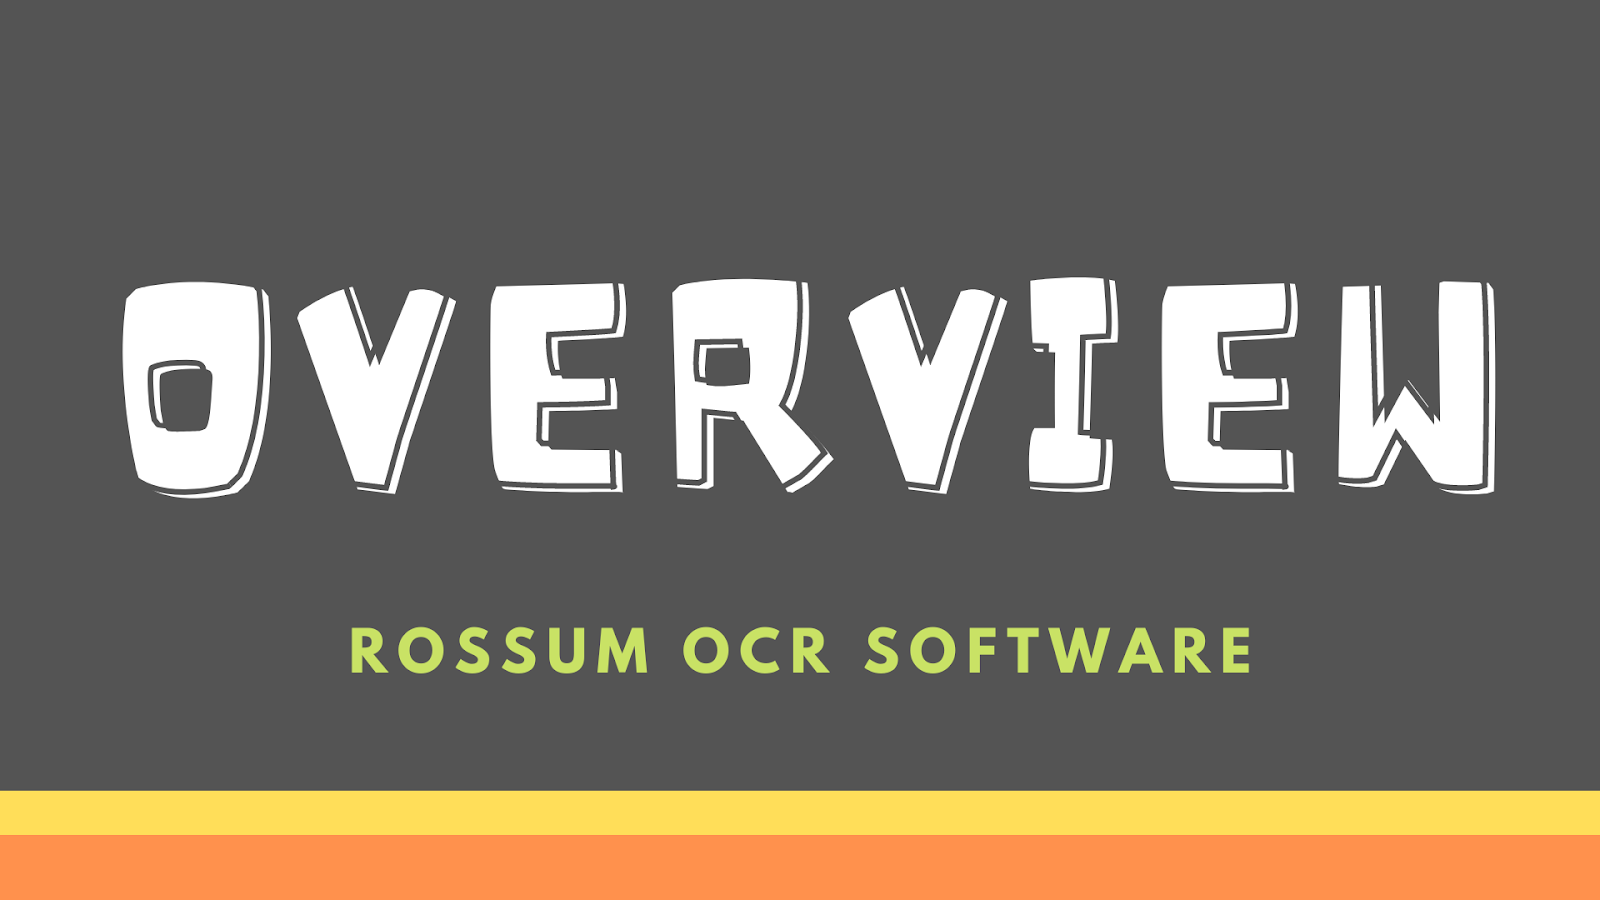 Rossum OCR Software Overview